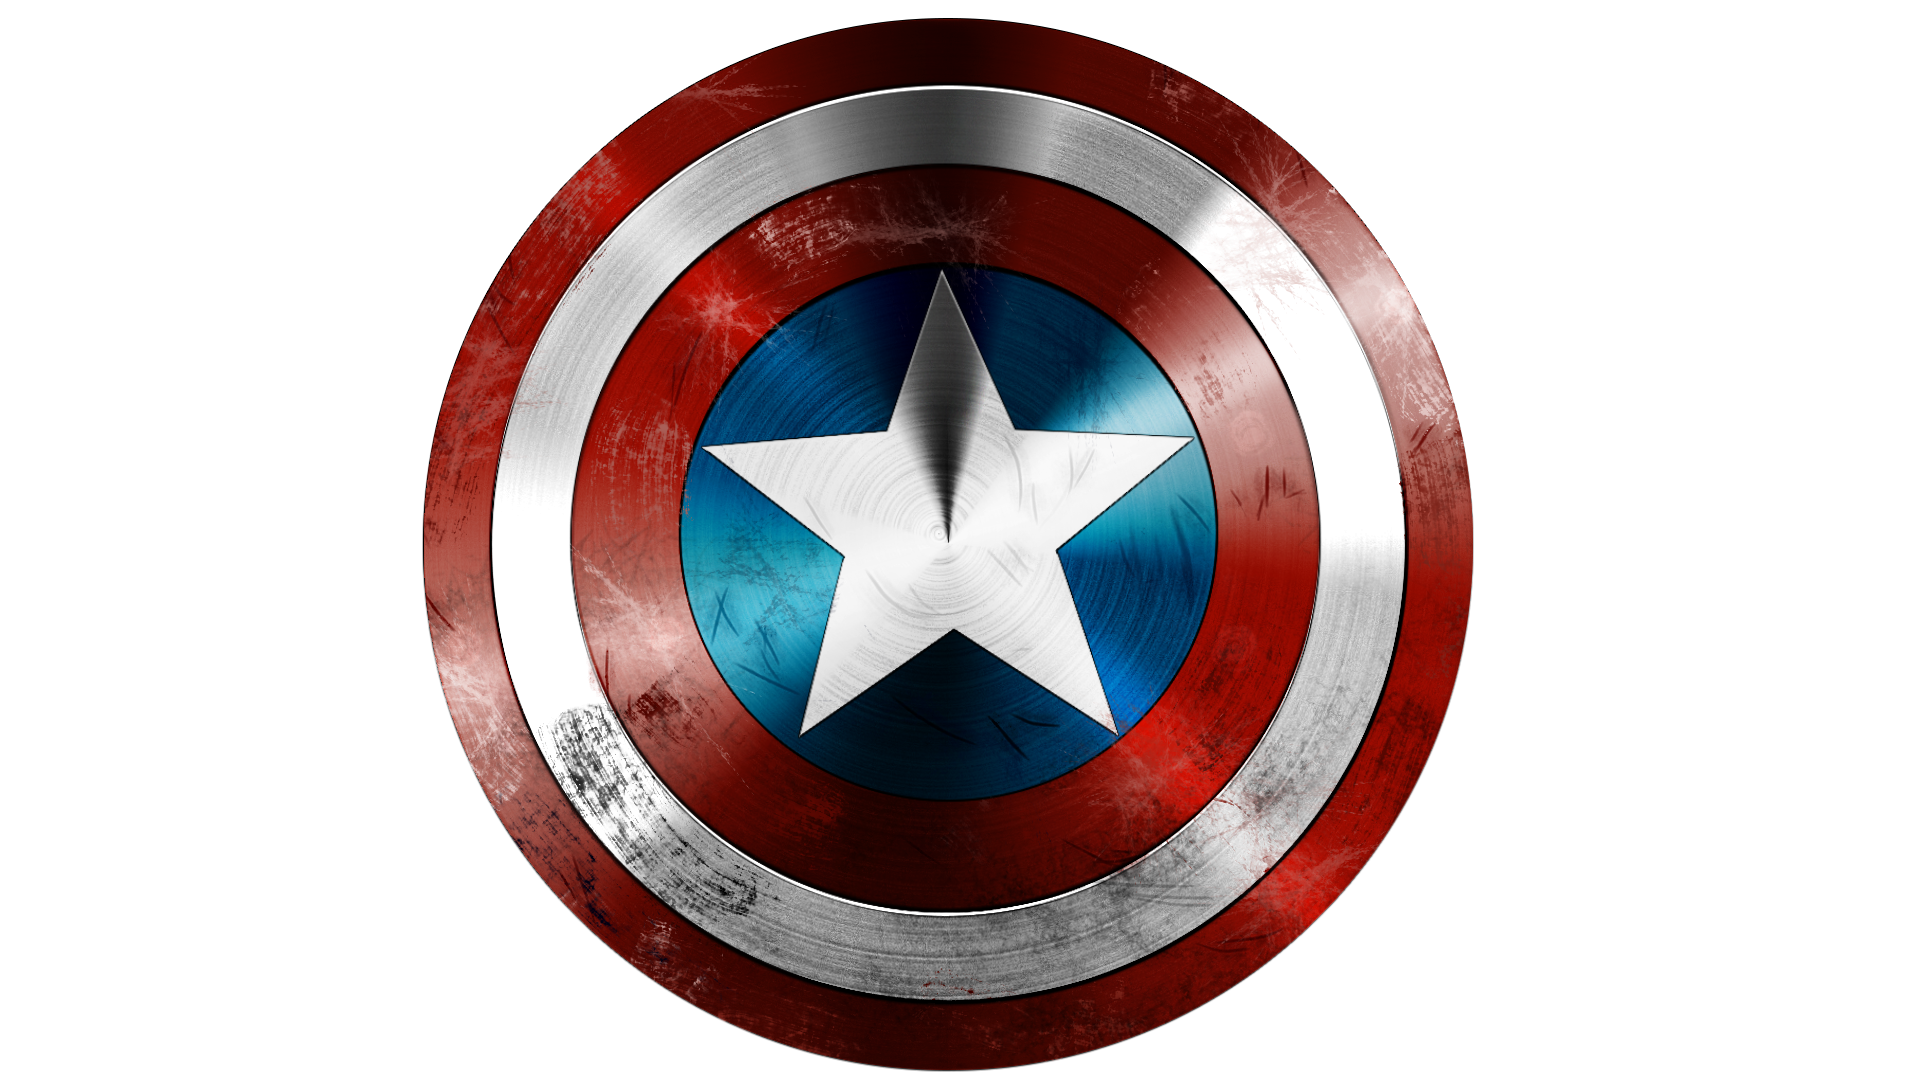 Captain America PNG Transparent pngteam.com